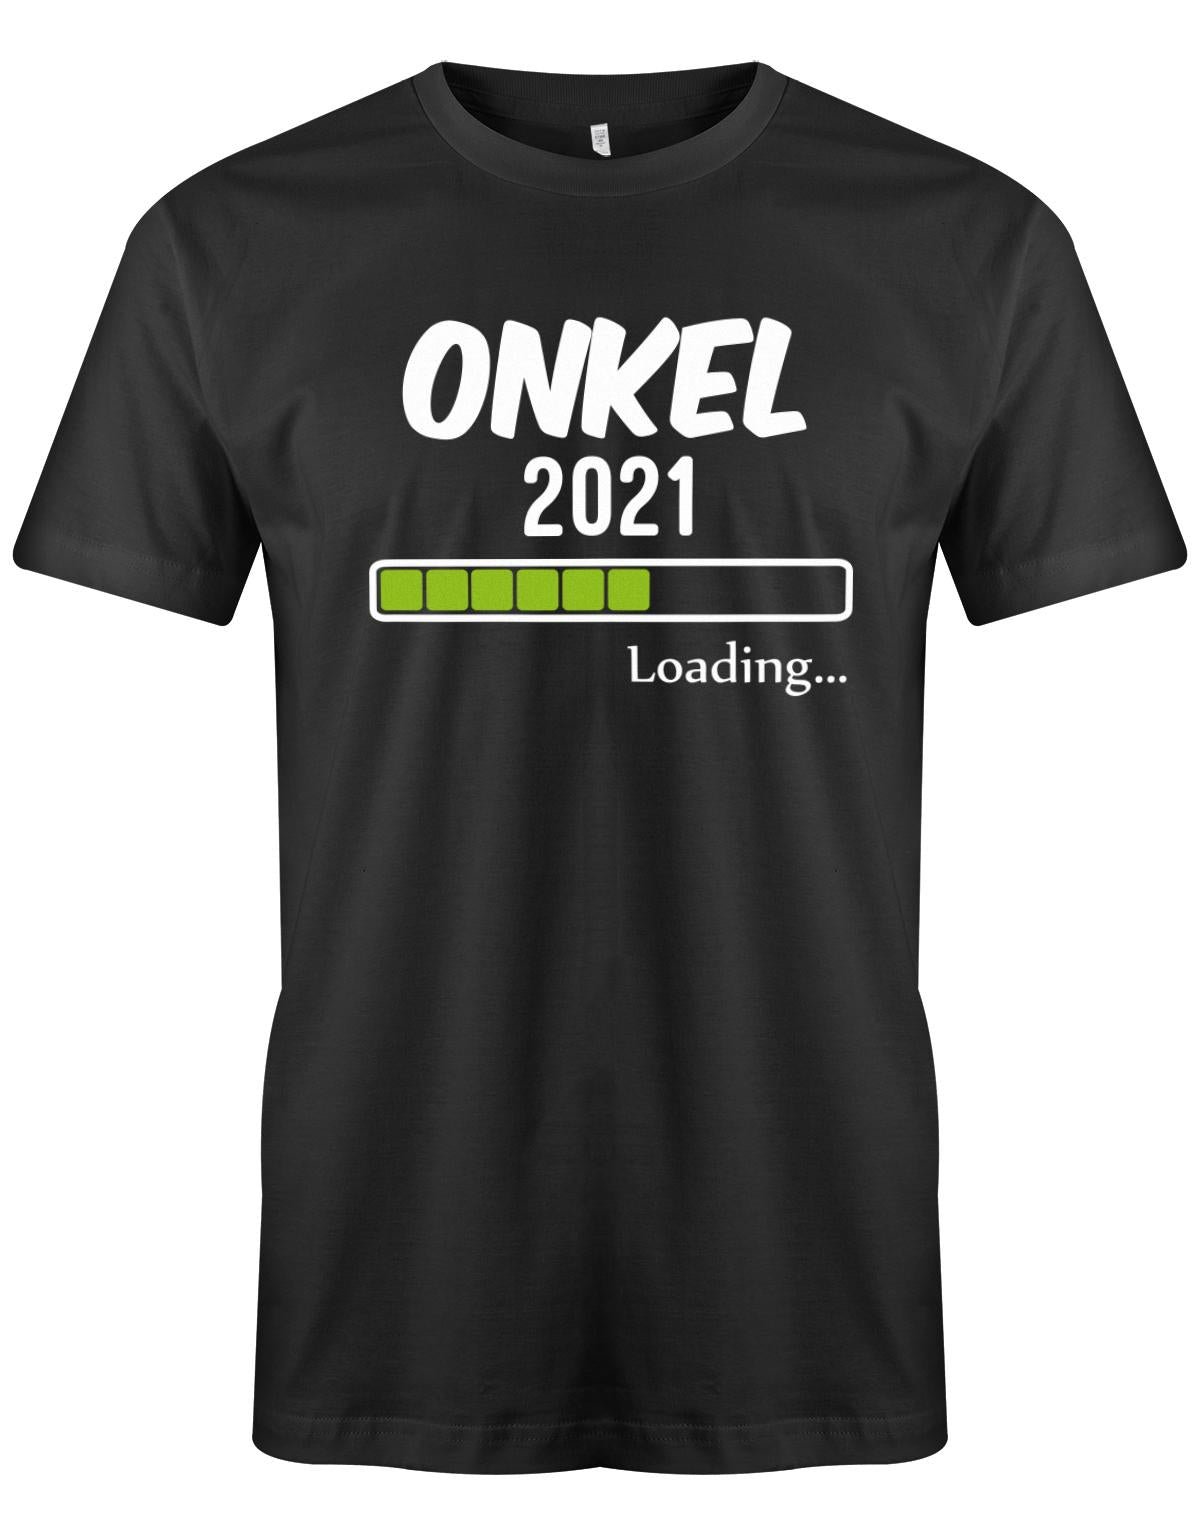 Onkel-loading-2021-Herren-Shirt-Schwarz